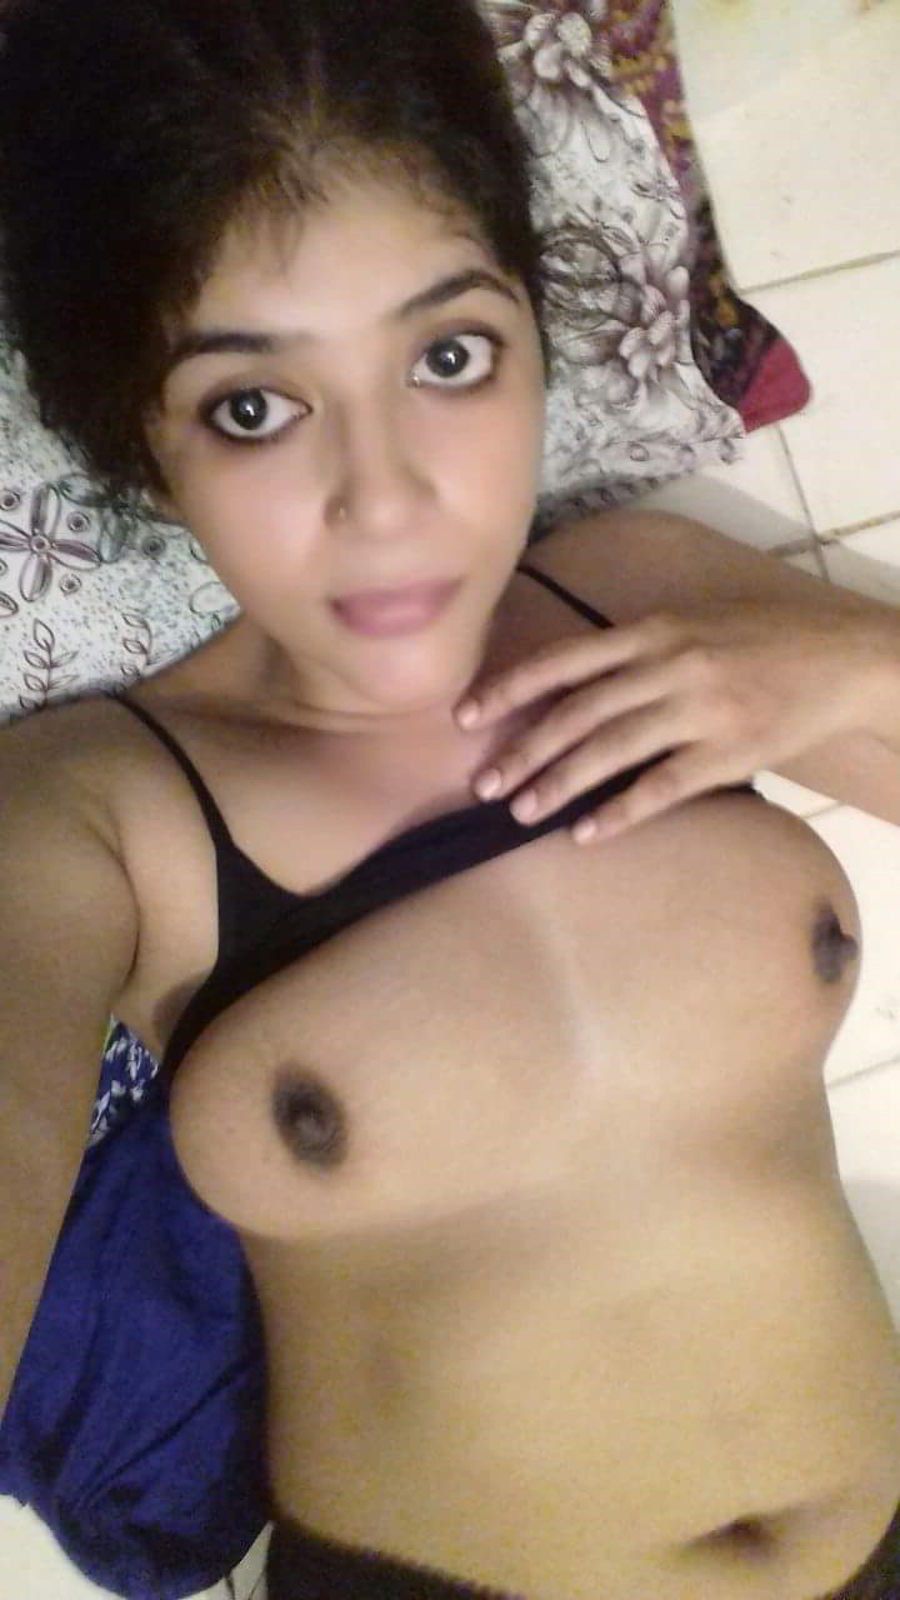 telugu nudist woman pics nude gallerie